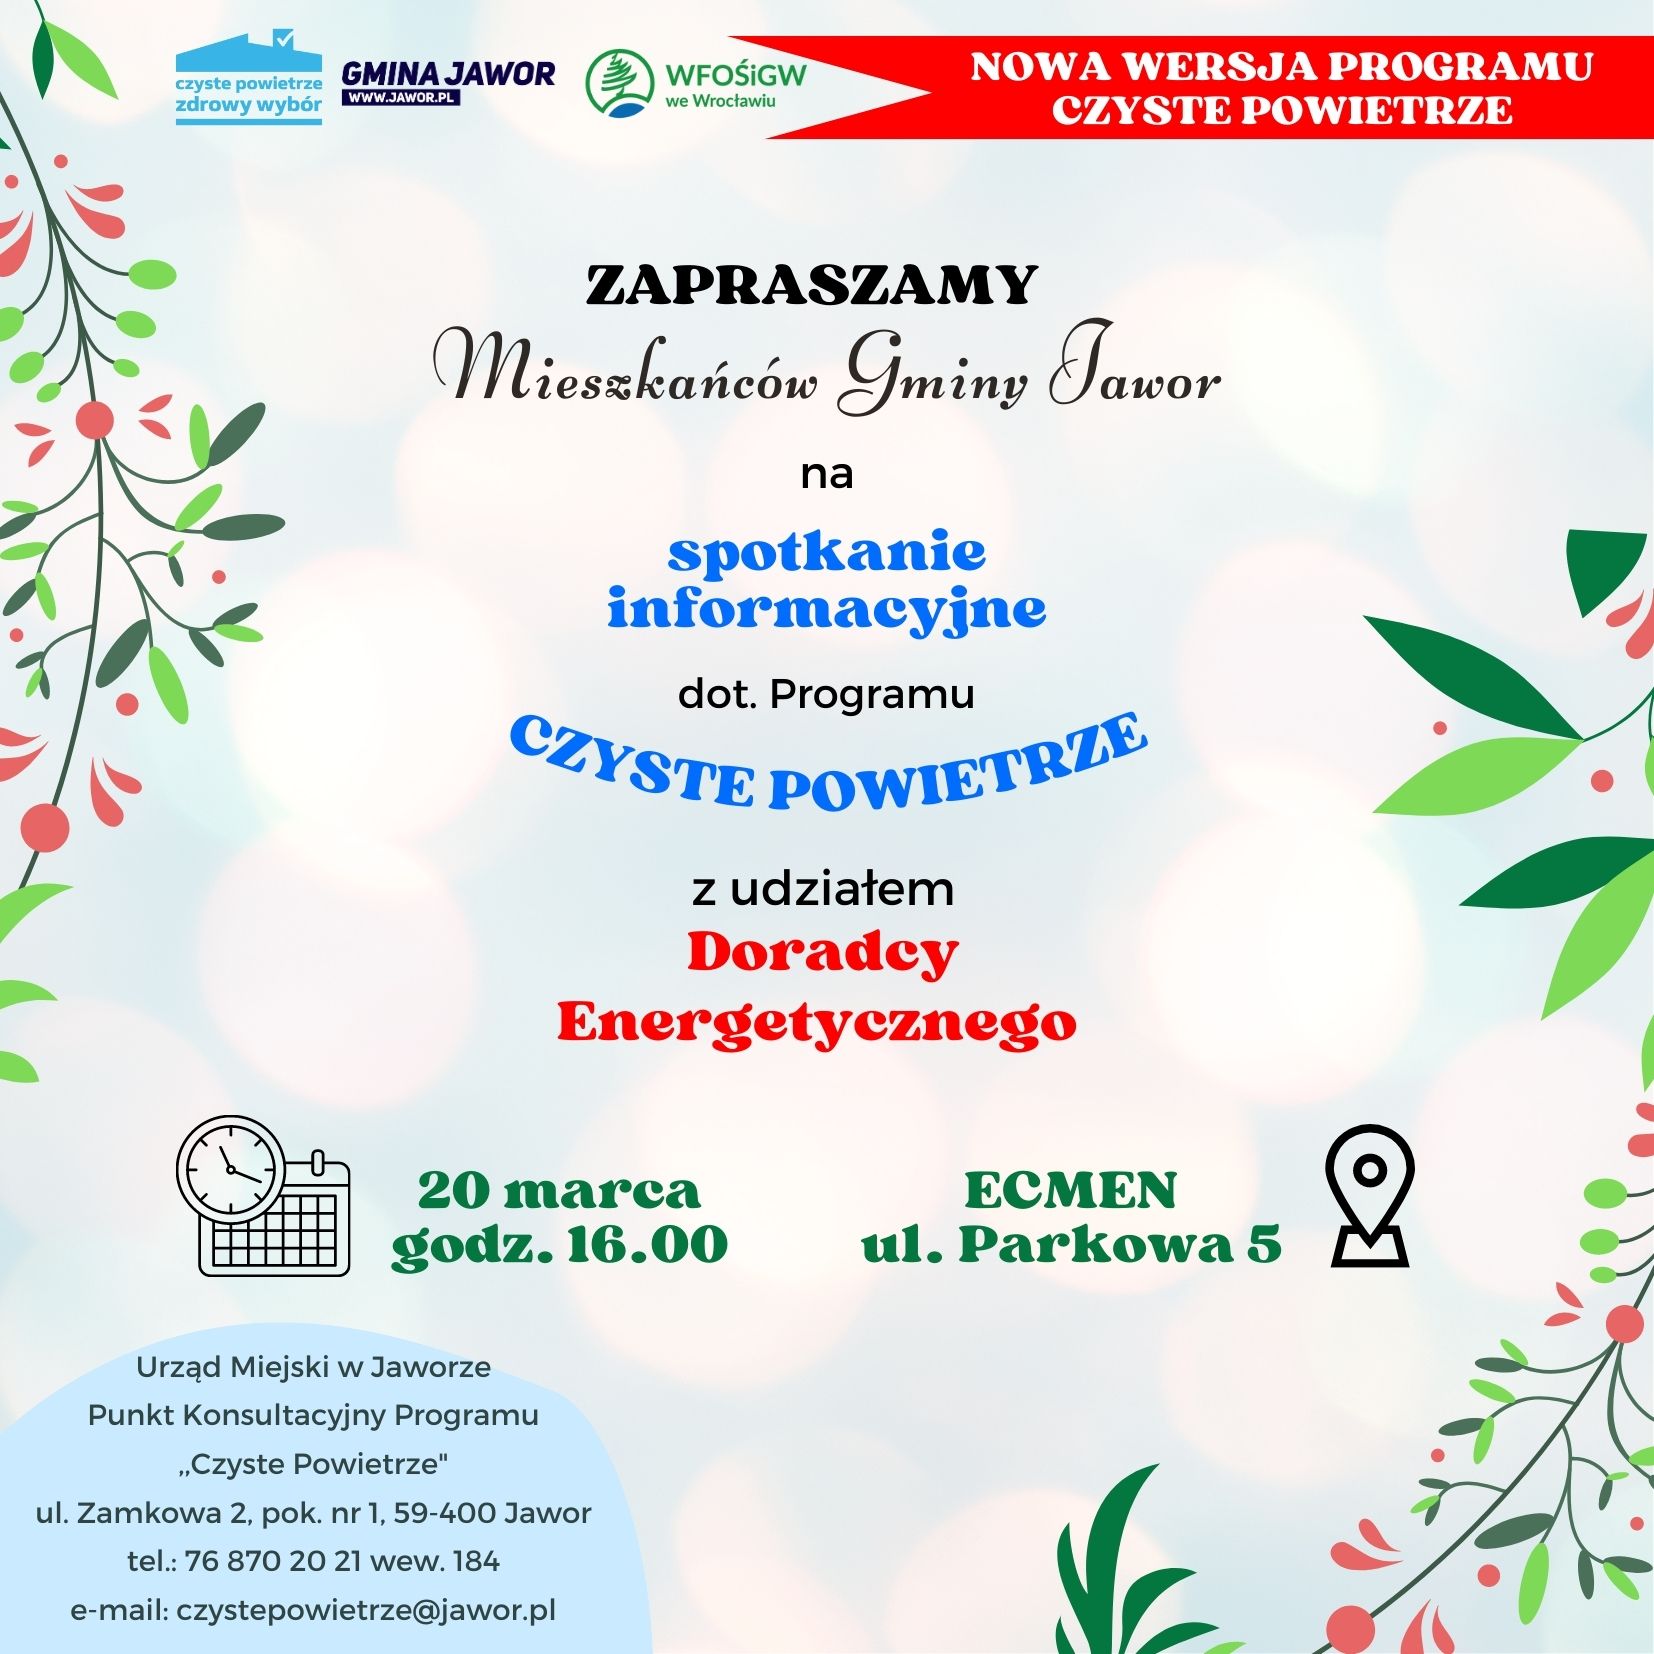 [,,Czyste Powietrze”]: Spotkanie informacyjne z udziałem Doradcy Energetycznego z WFOŚiGW Wrocław